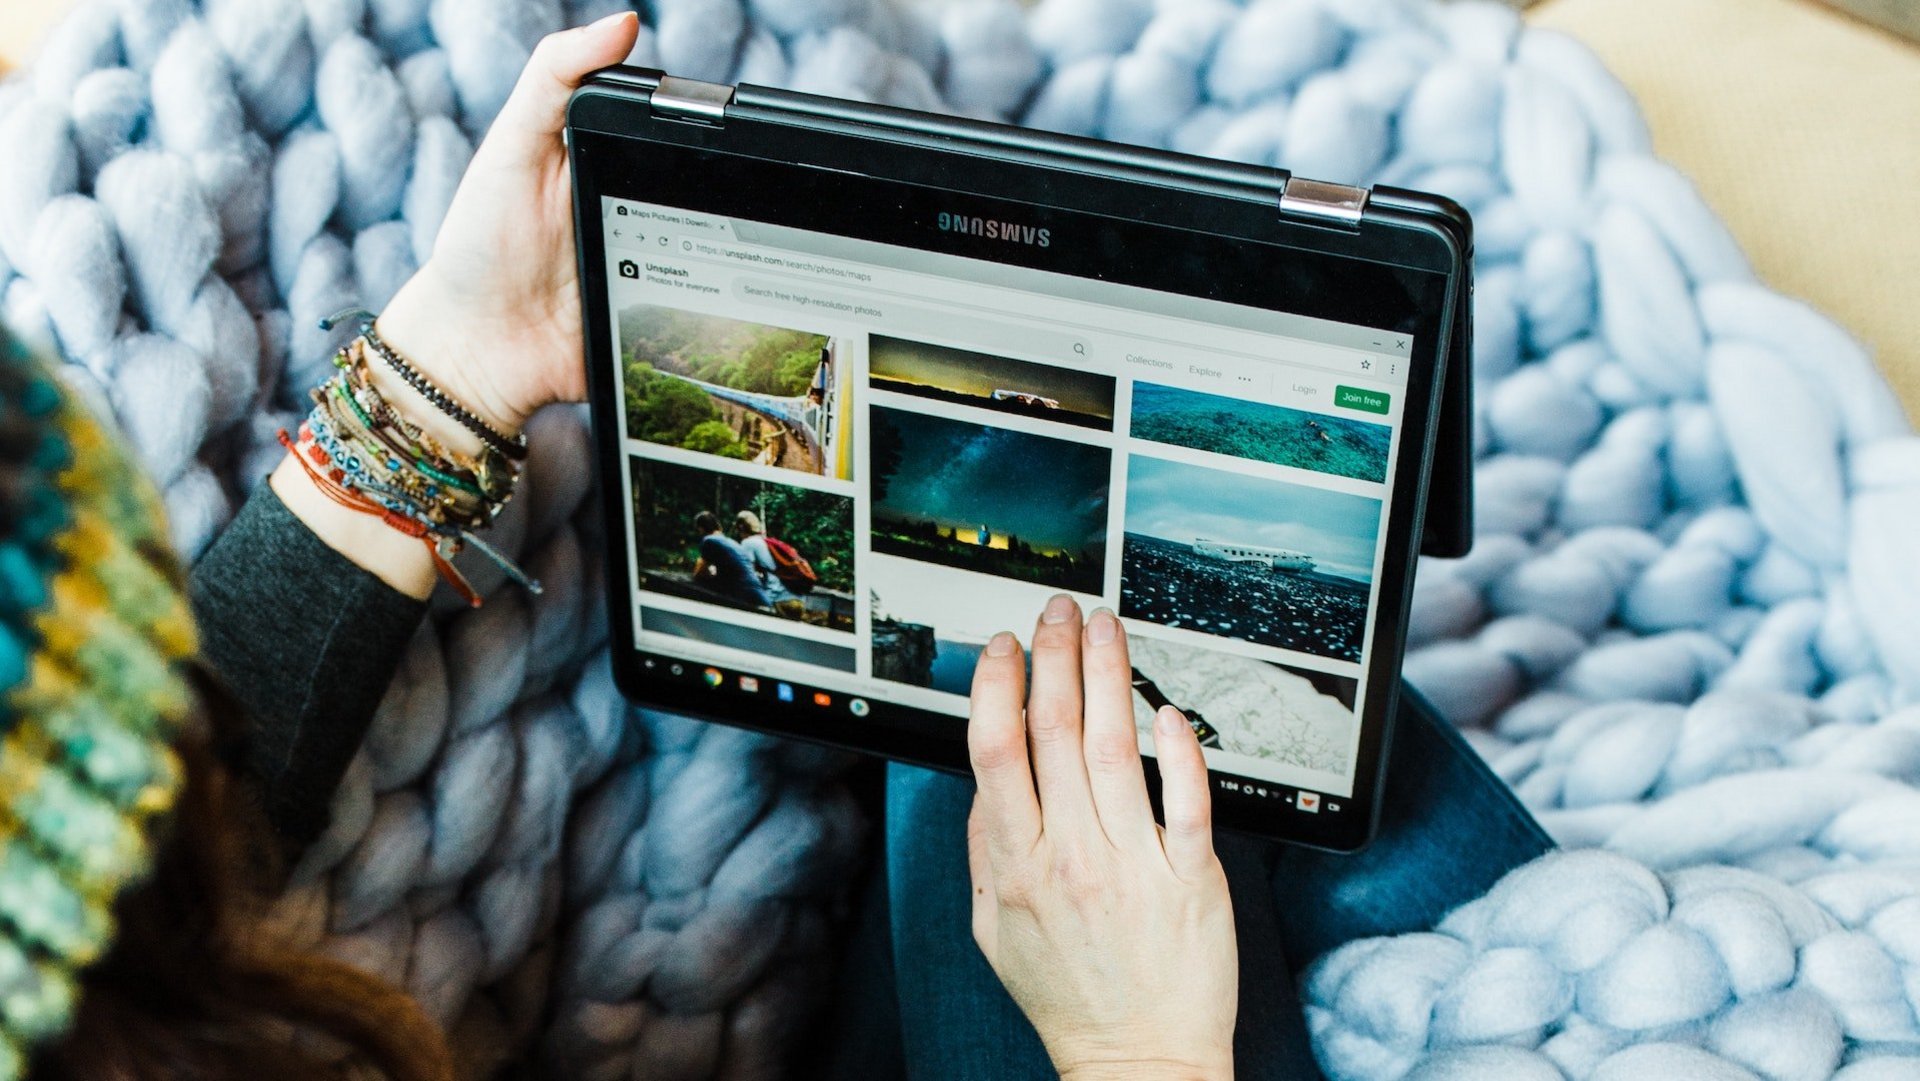 Frau mit Wollmütze sitzt auf der Couch und schaut auf einem Tablet Naturfotos auf Pinterest an.